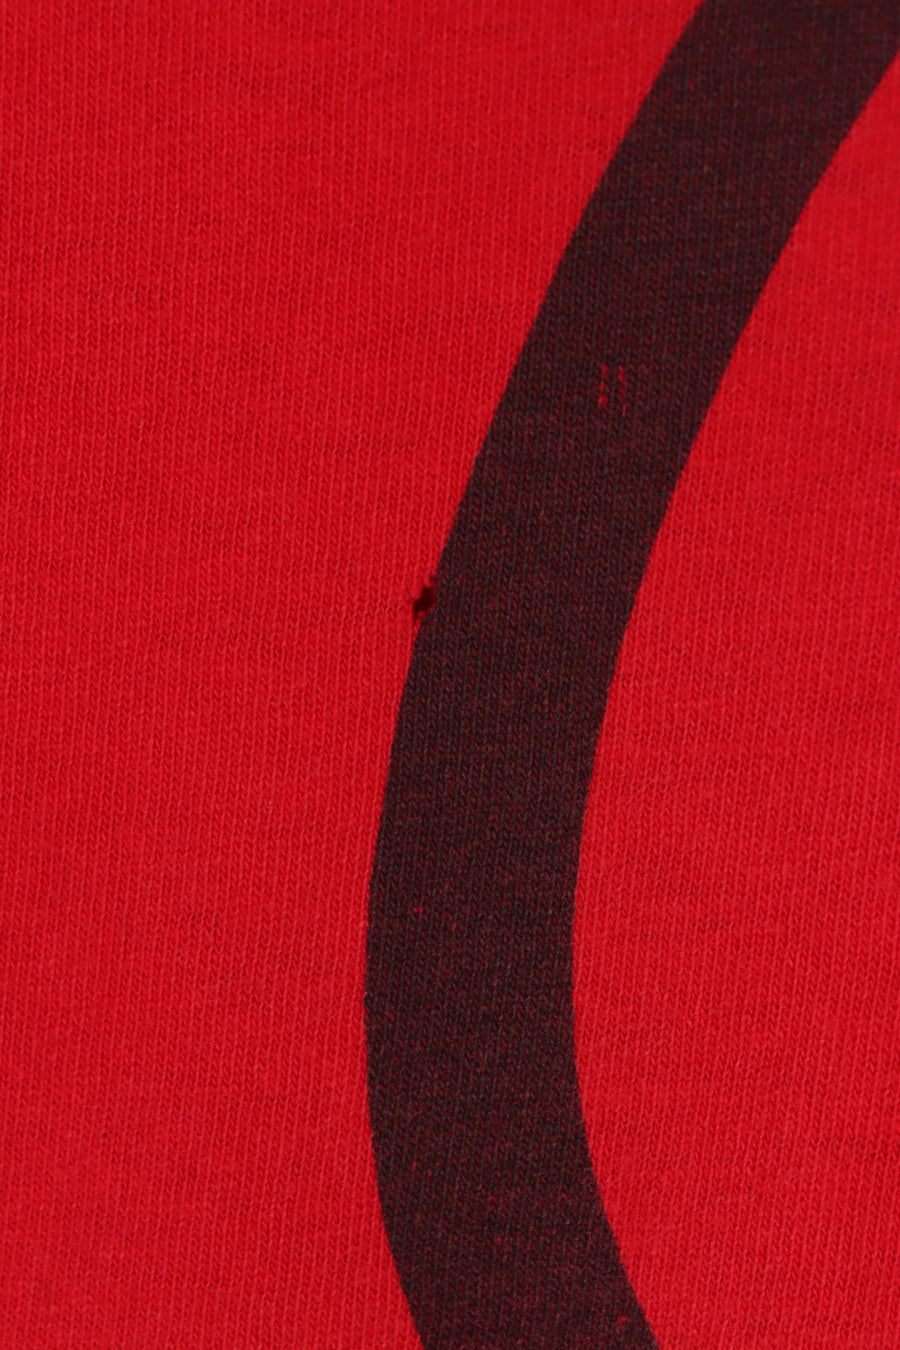 NFL San Francisco 49ers 1993 Big Logo Single Stitch Tee (XXL)